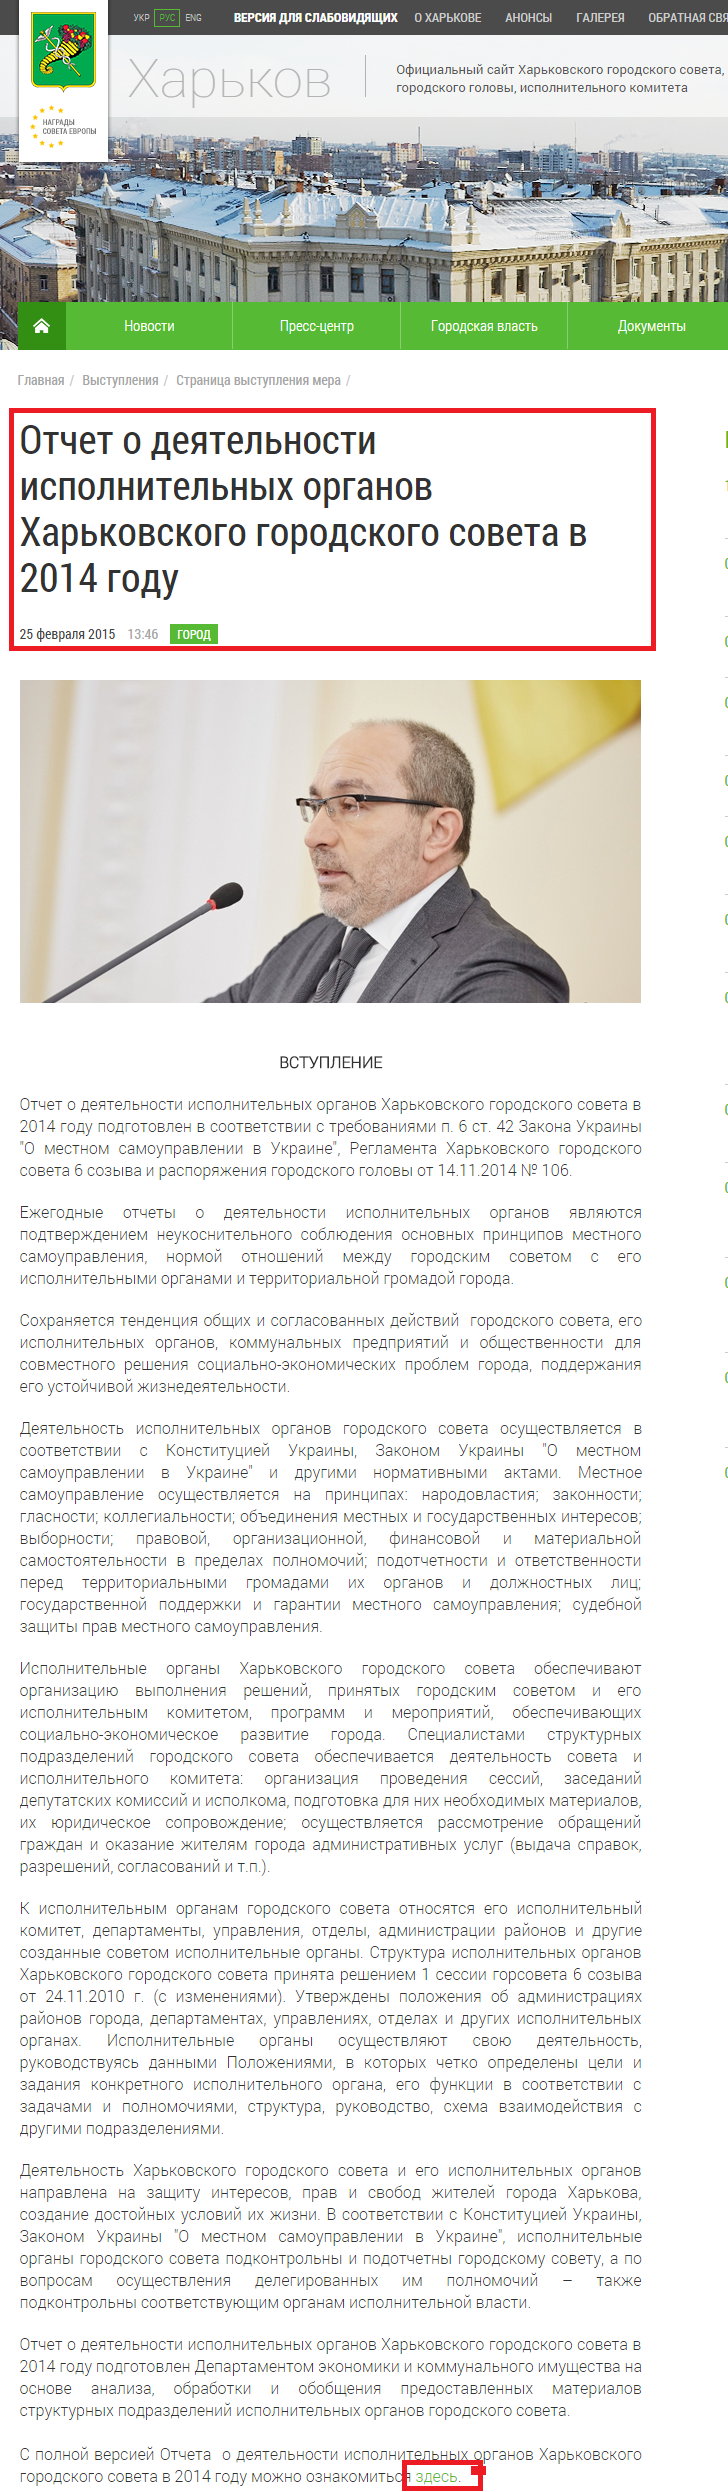 http://www.city.kharkov.ua/ru/publication/otchet-o-deyatelnosti-ispolnitelnykh-organov-kharkovskogo-gorodskogo-soveta-v-2014-godu-26300.html